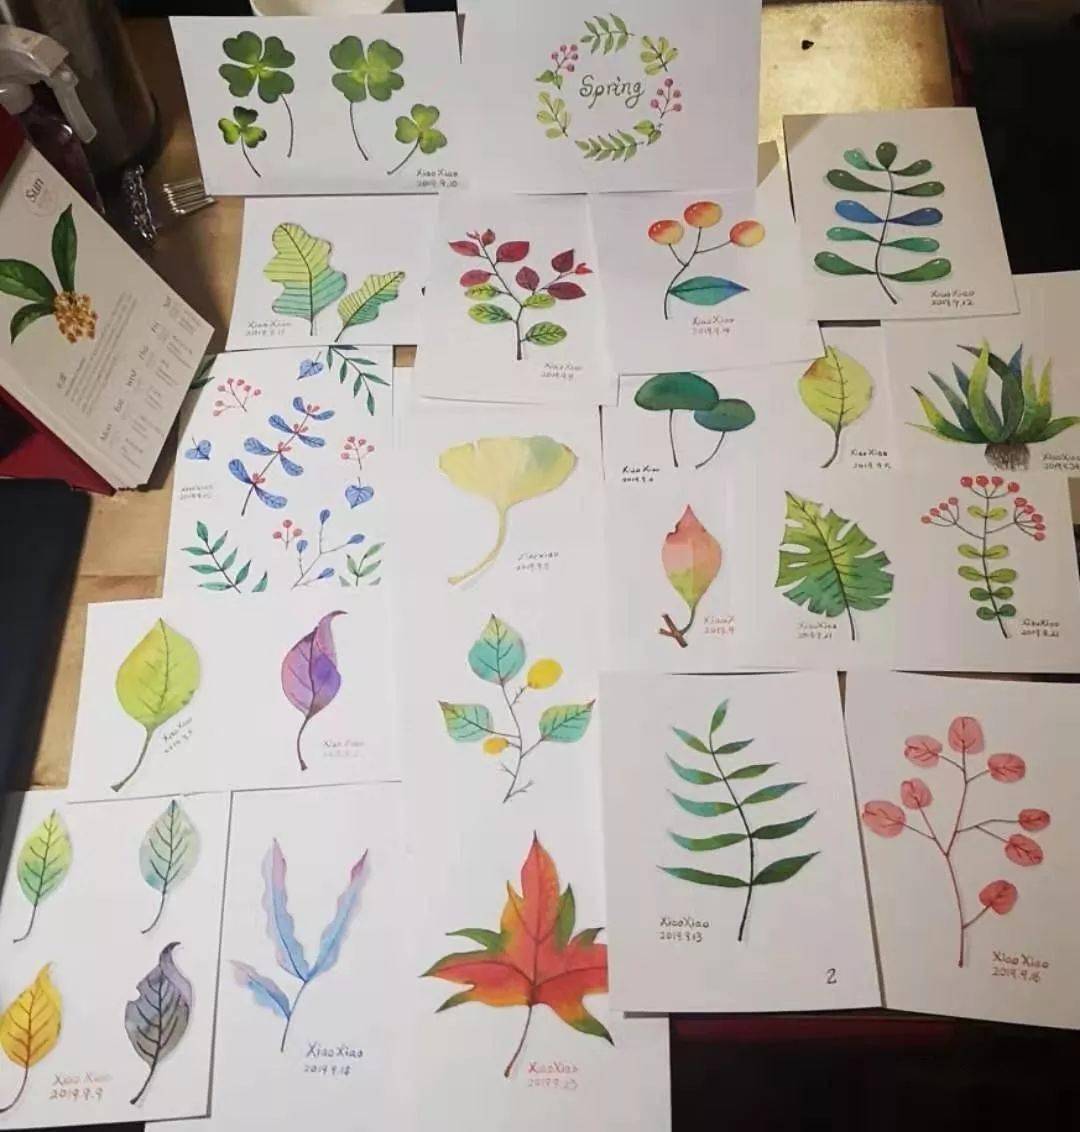 零基础学水彩:21节植物课,增长绘画技能,从一片叶子开始!